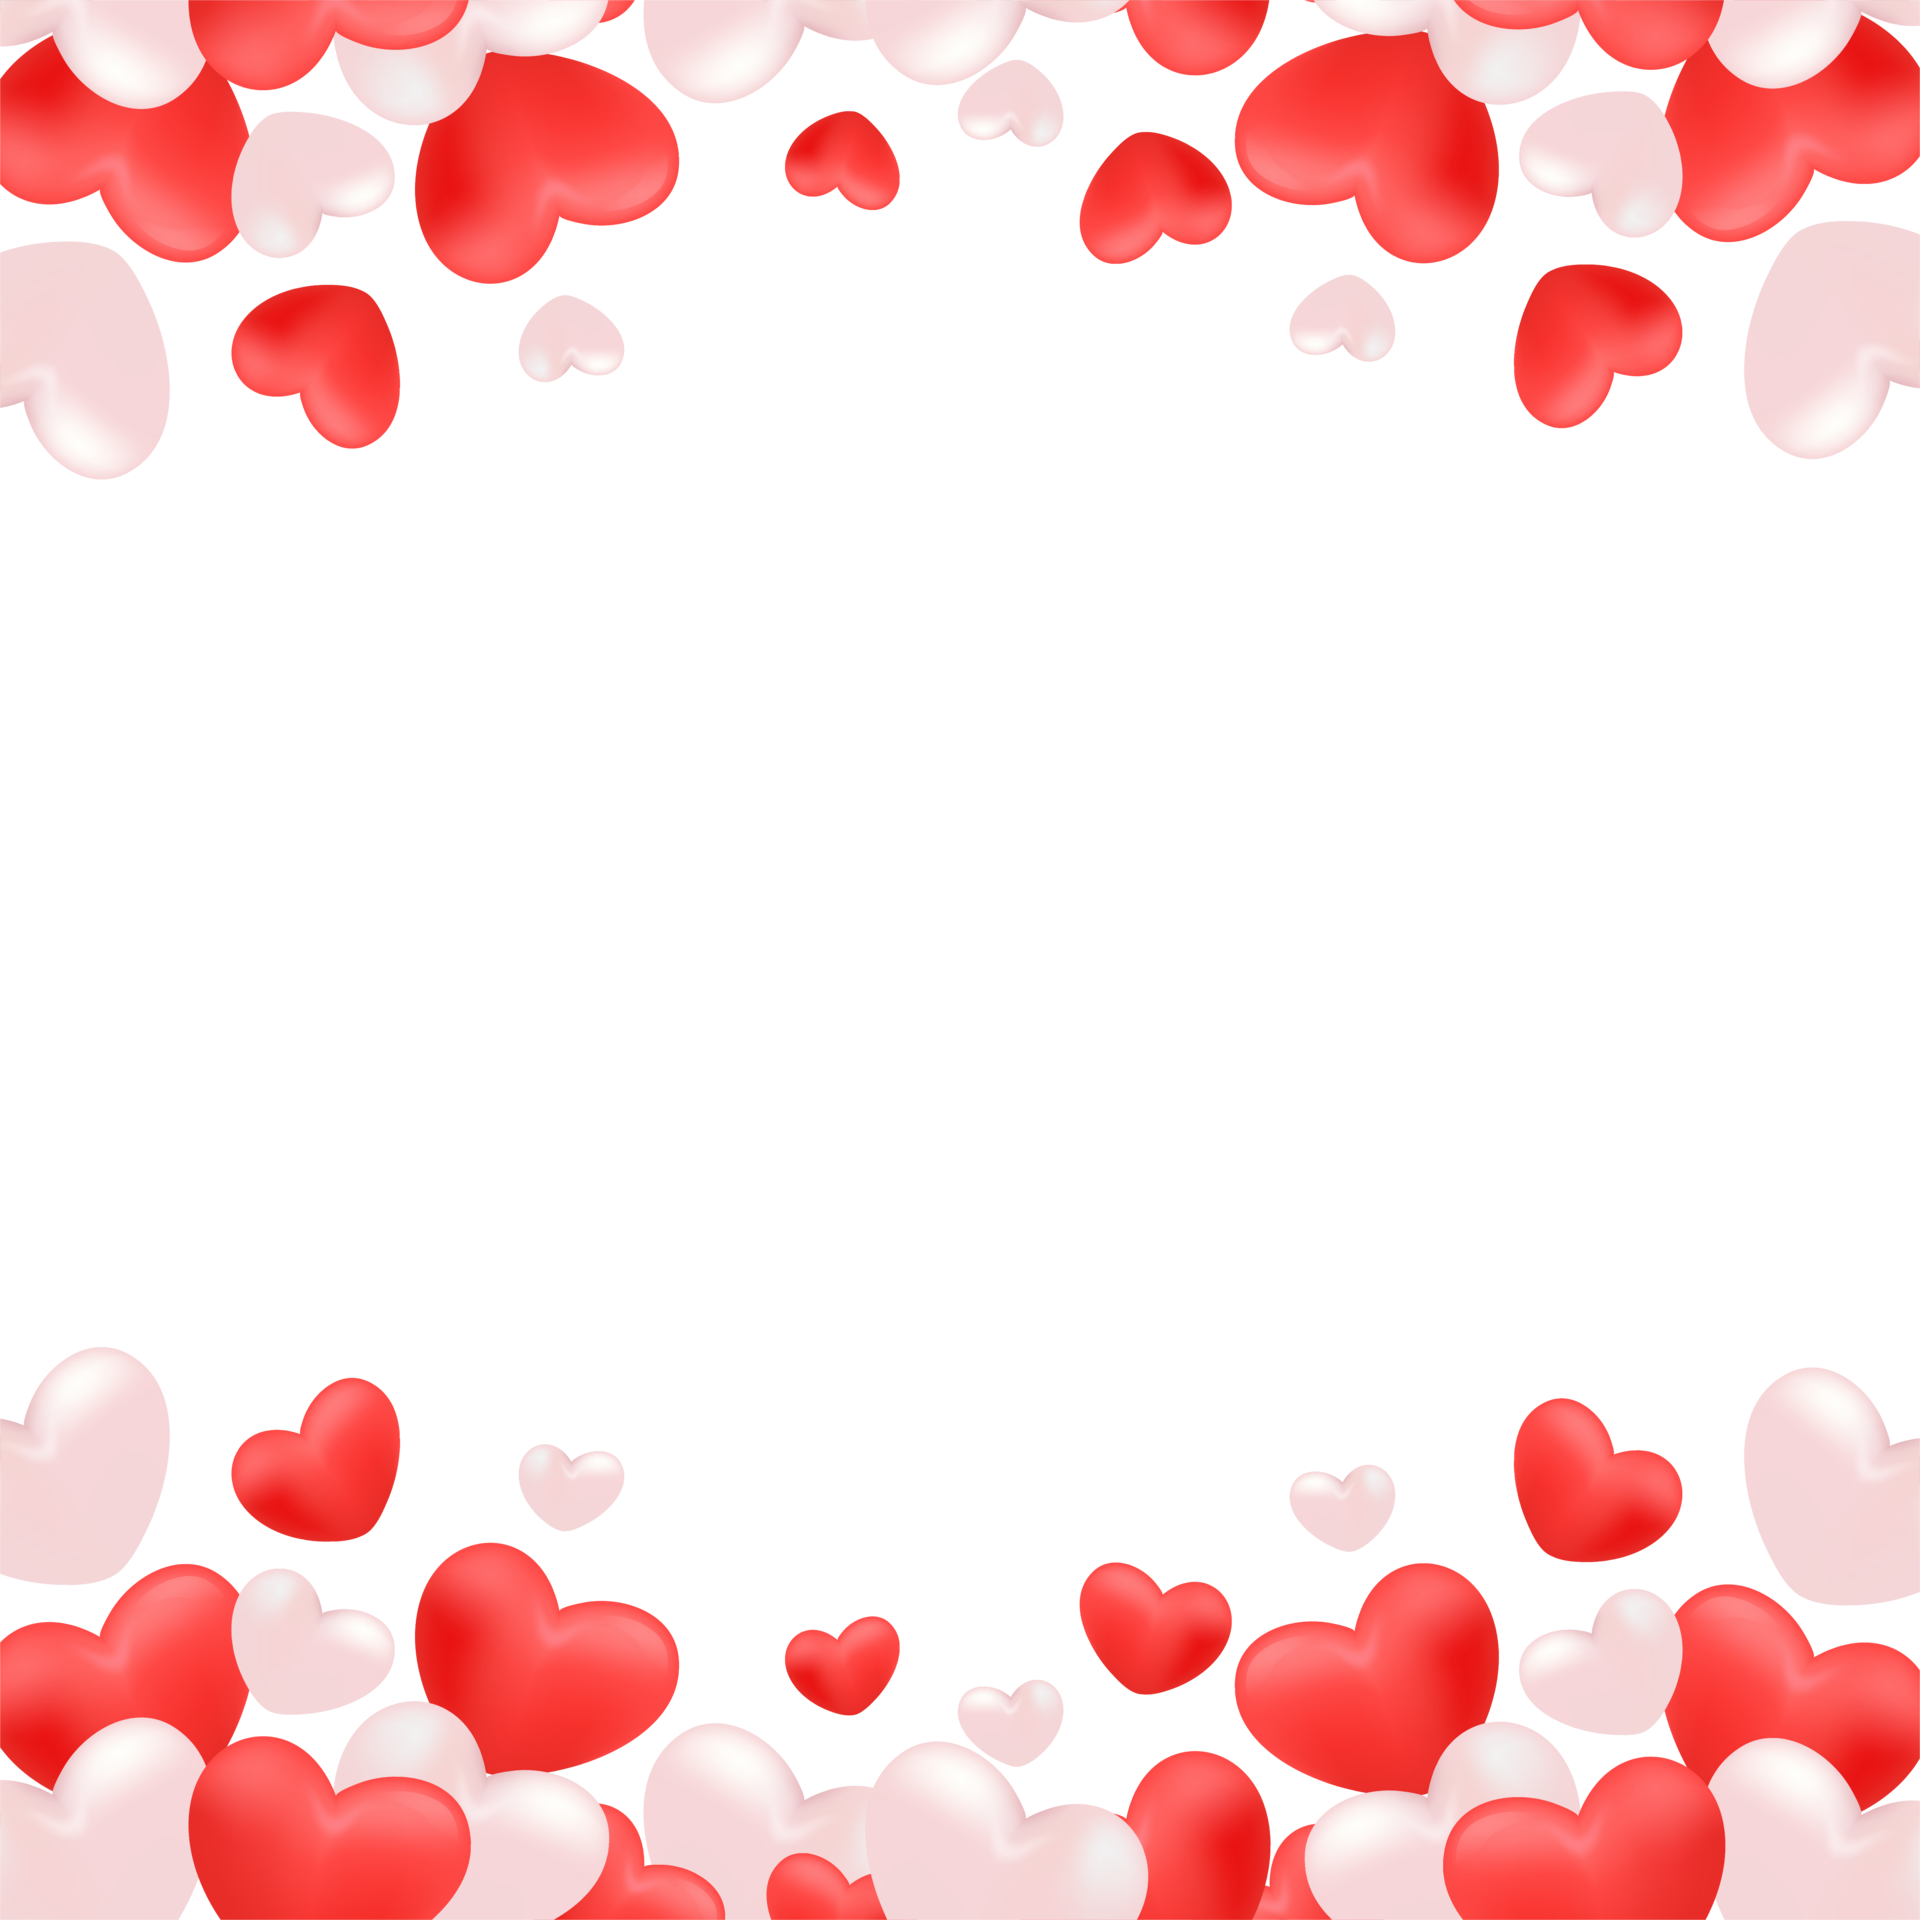 Không muốn bỏ ra quá nhiều tiền để mua khung hình Valentine đẹp mắt? Hãy tham khảo bộ sưu tập khung hình Valentine đỏ trắng miễn phí của chúng tôi. Với các thiết kế độc đáo và đẹp mắt, bạn sẽ tìm thấy lựa chọn tuyệt vời để trang trí ảnh của mình mà không cần tốn kém.